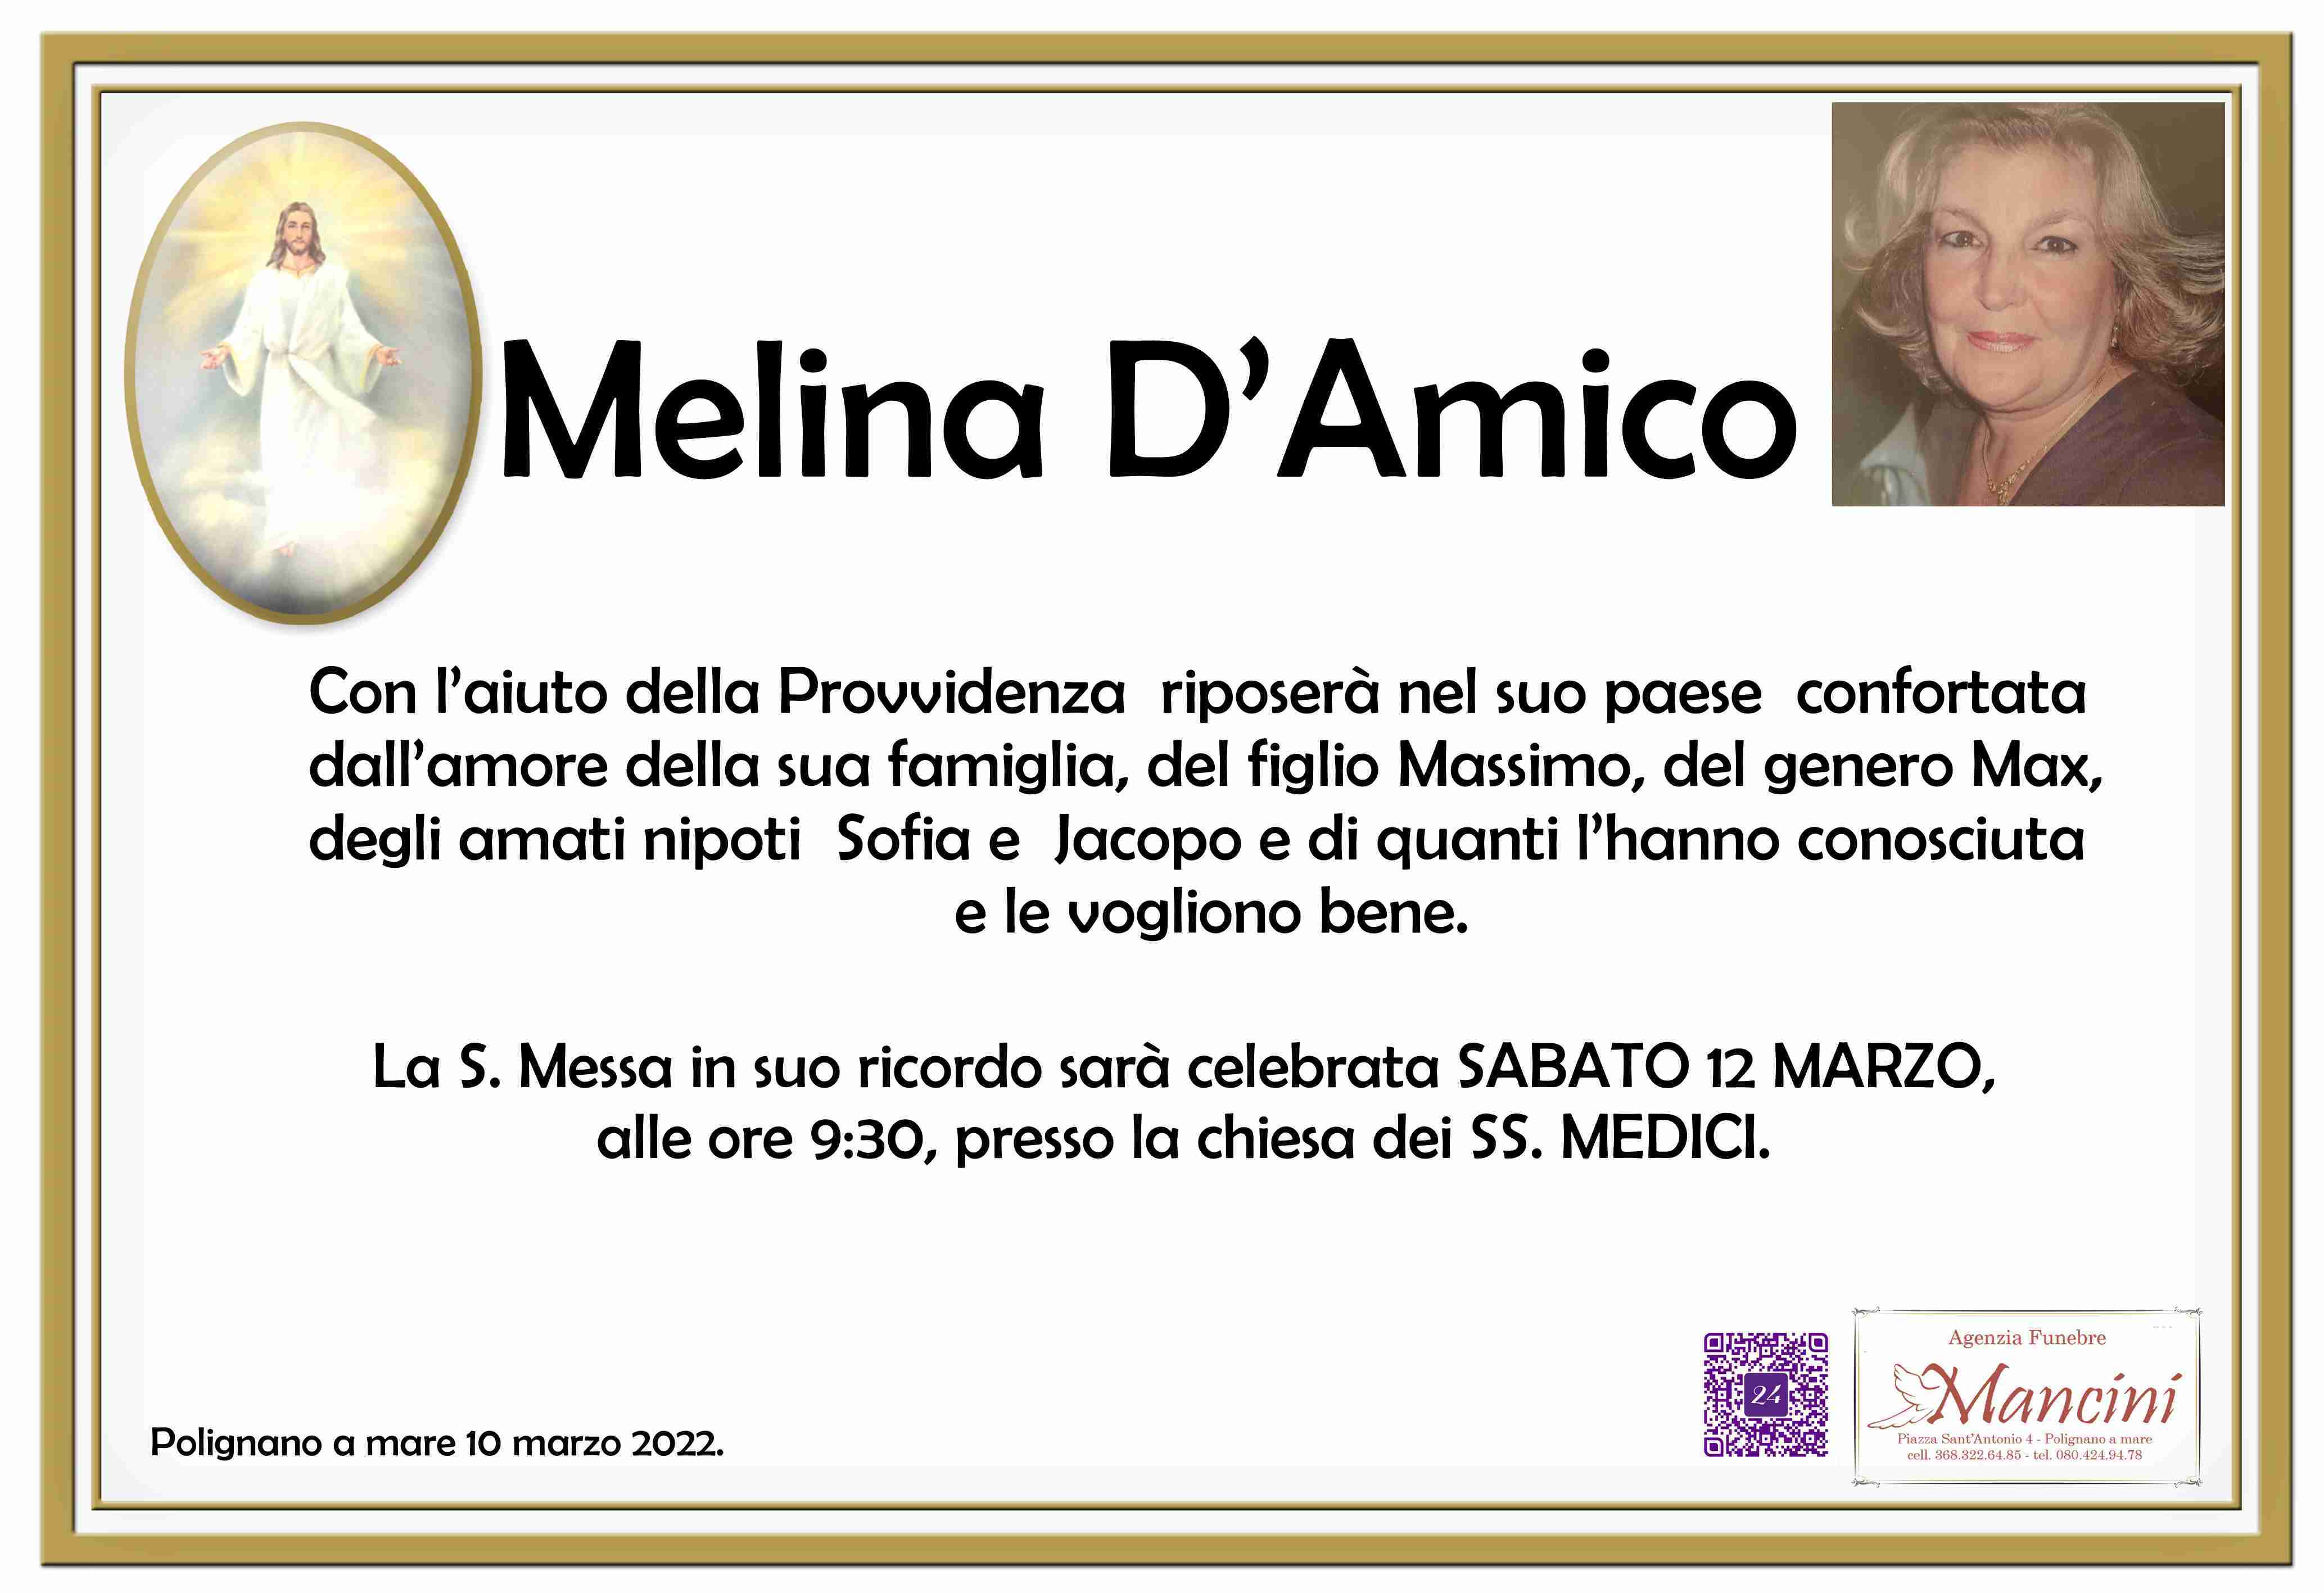 Melina D'Amico